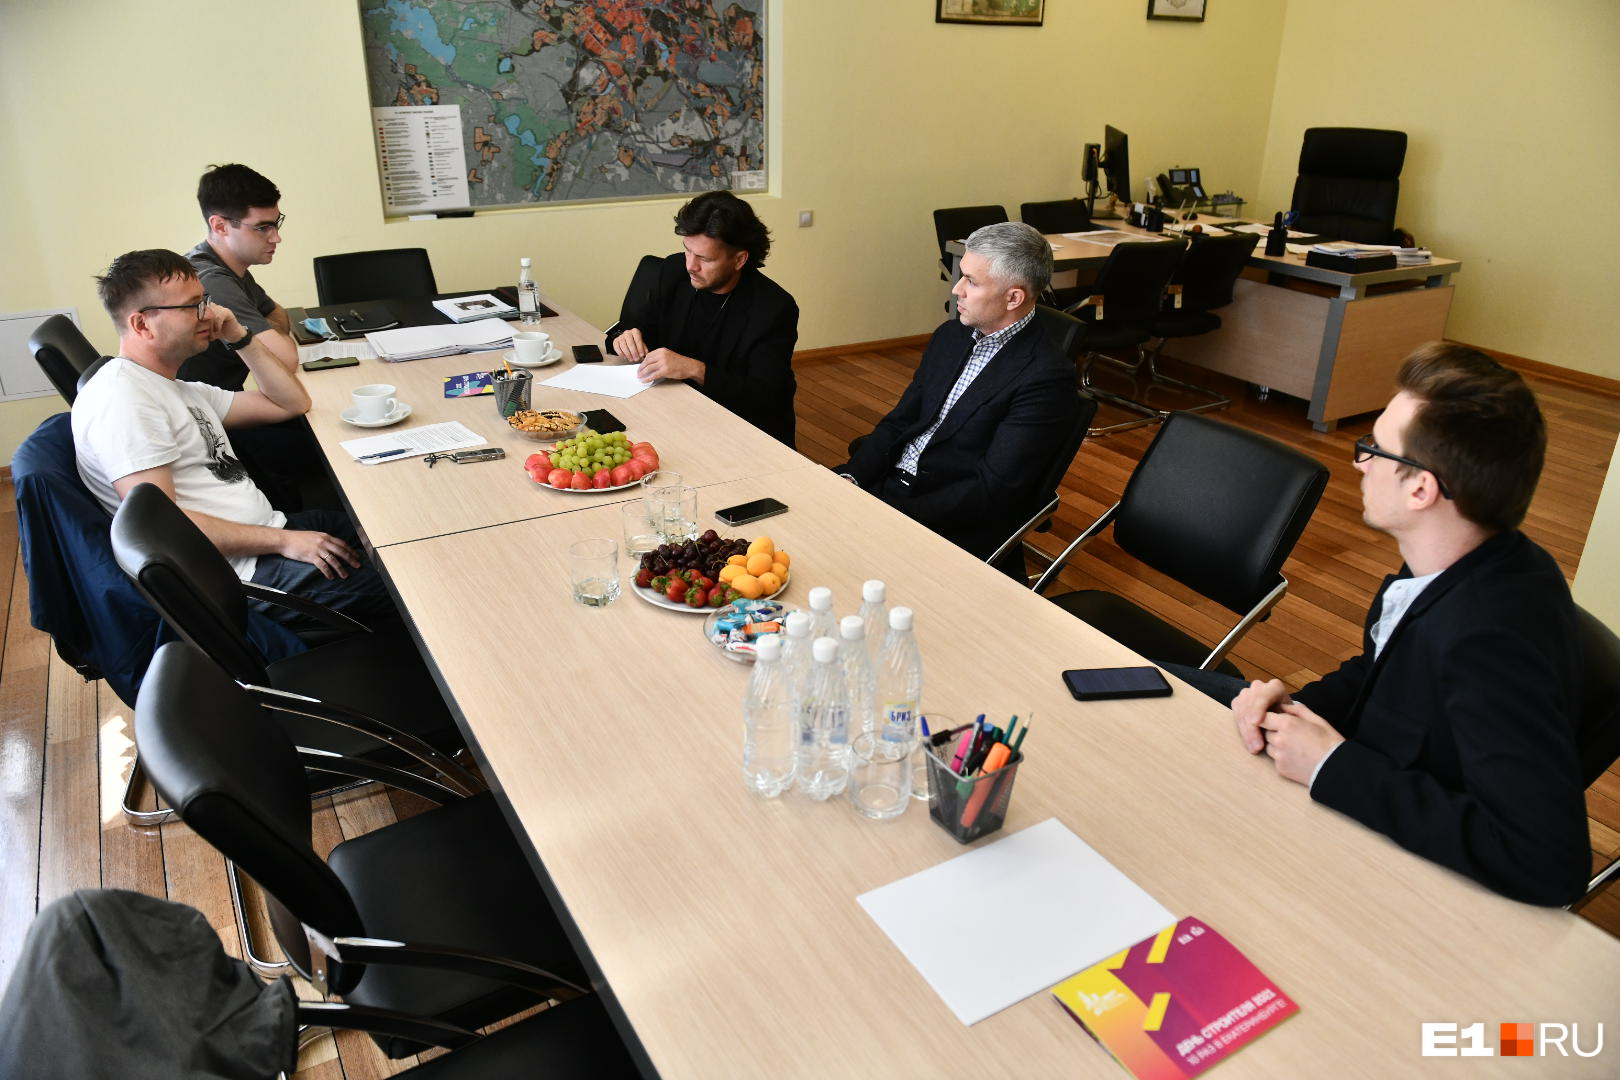 Рустам Галямов на посту вице-мэра впервые встретился с журналистами